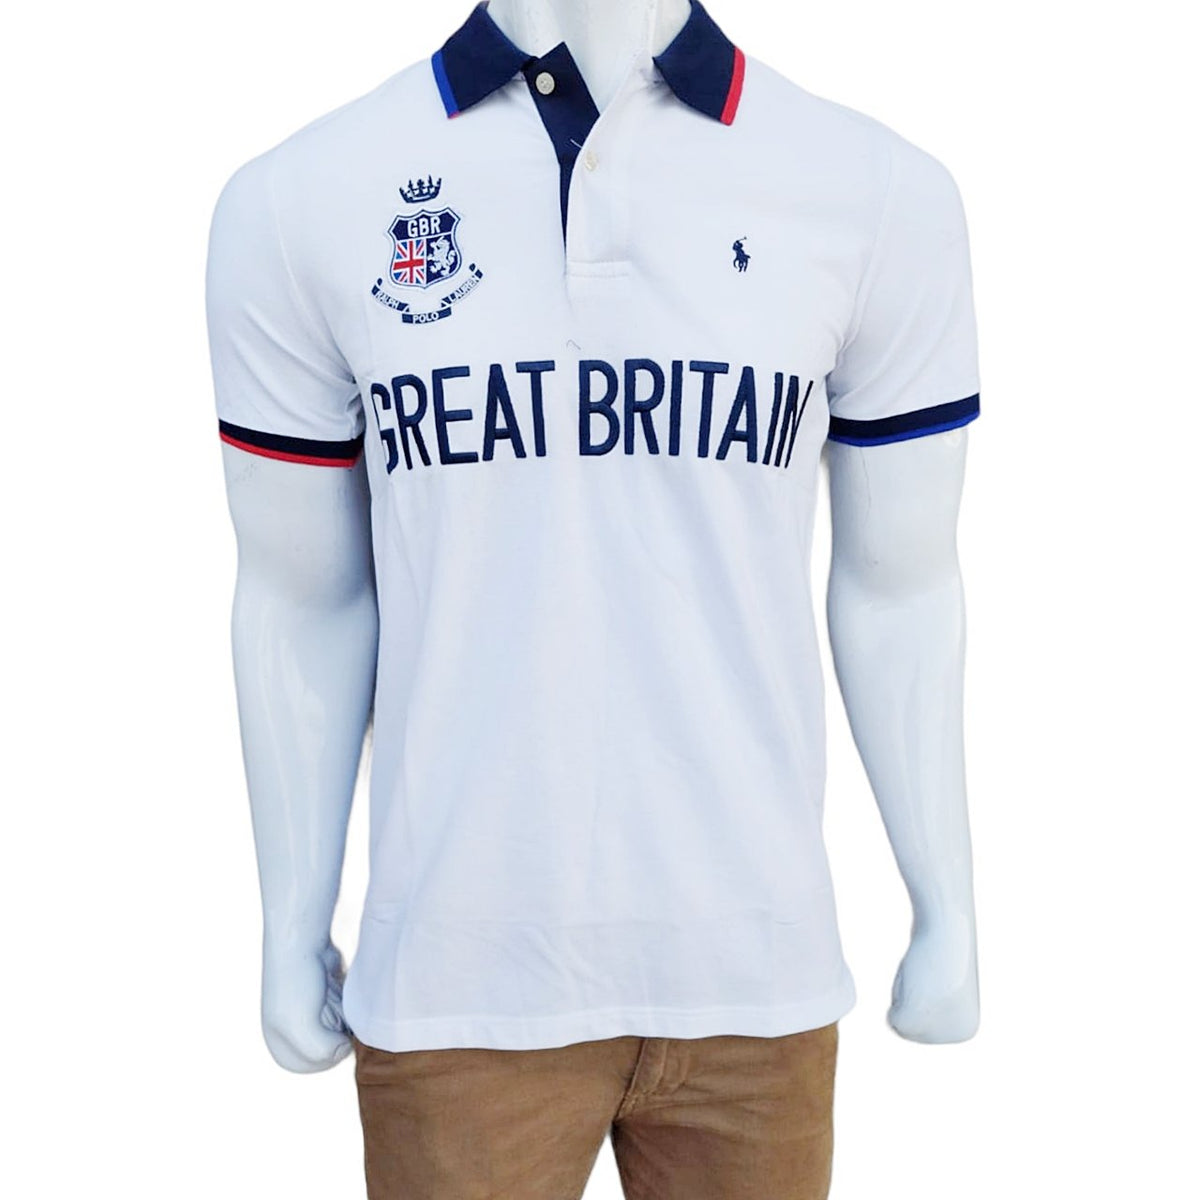 RL BRITAIN exclusive polo shirt